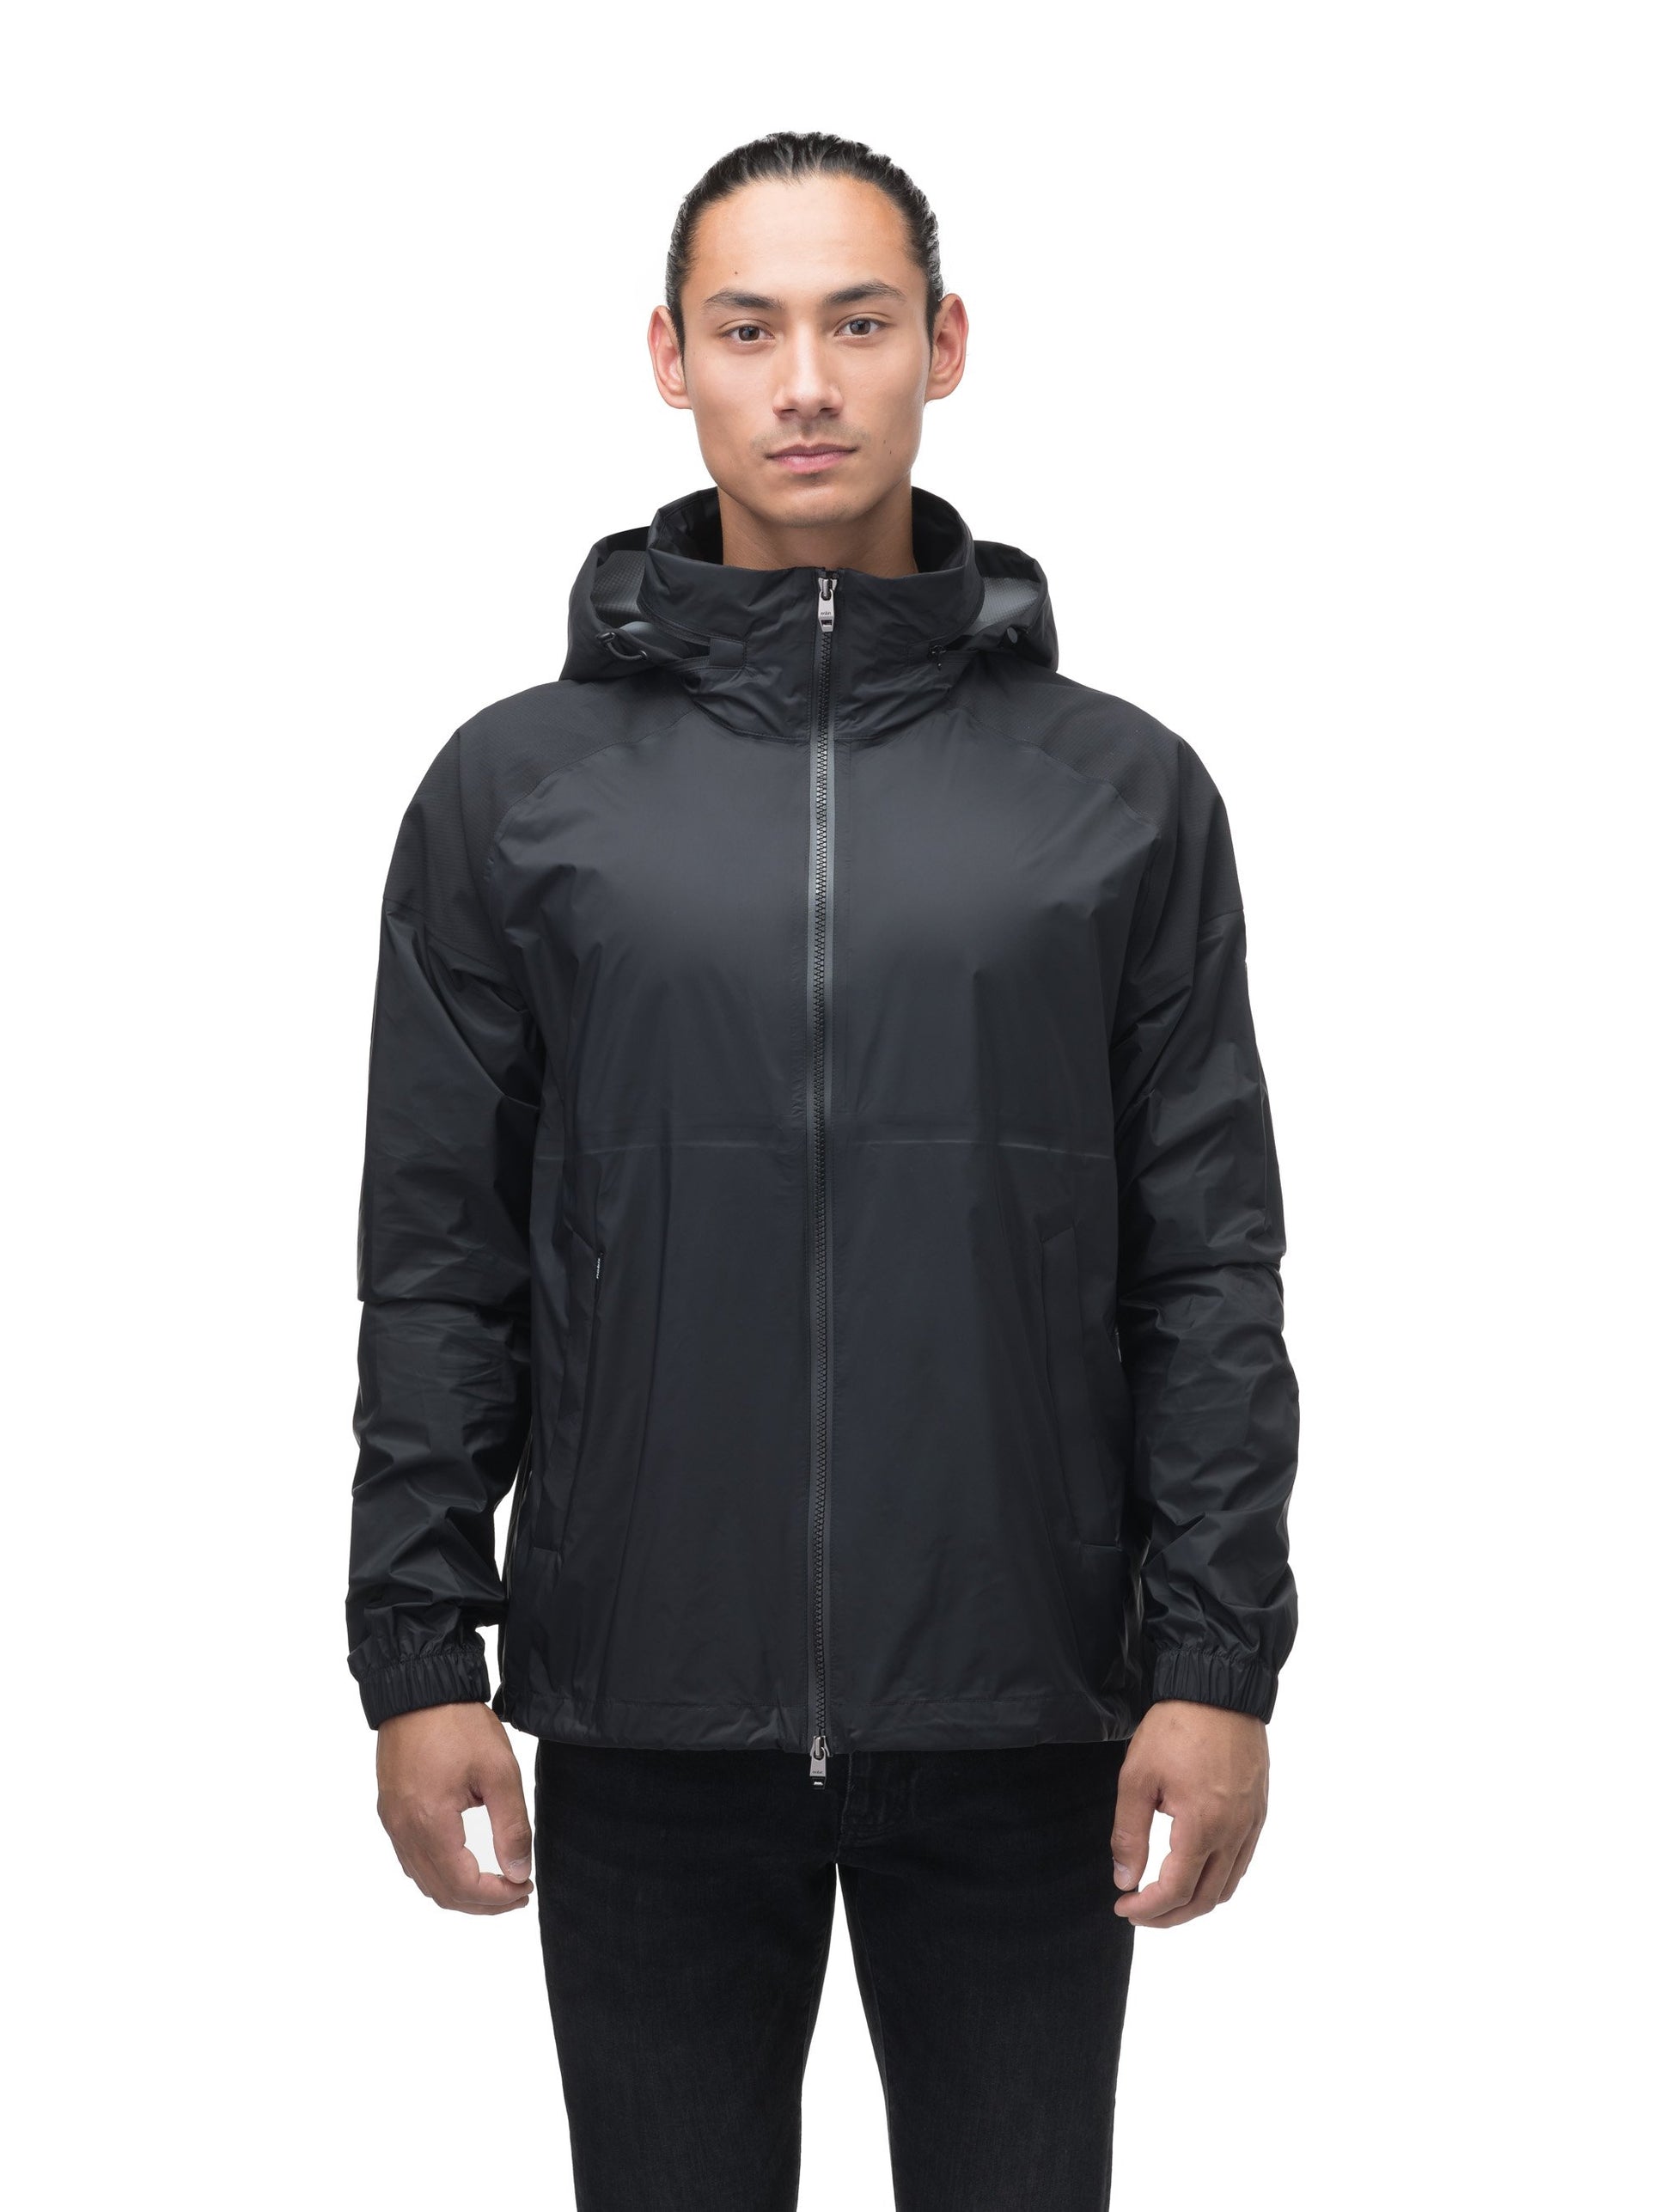 Men's hip length waterproof jacket with tuckable hood and 2-way zipper in Black